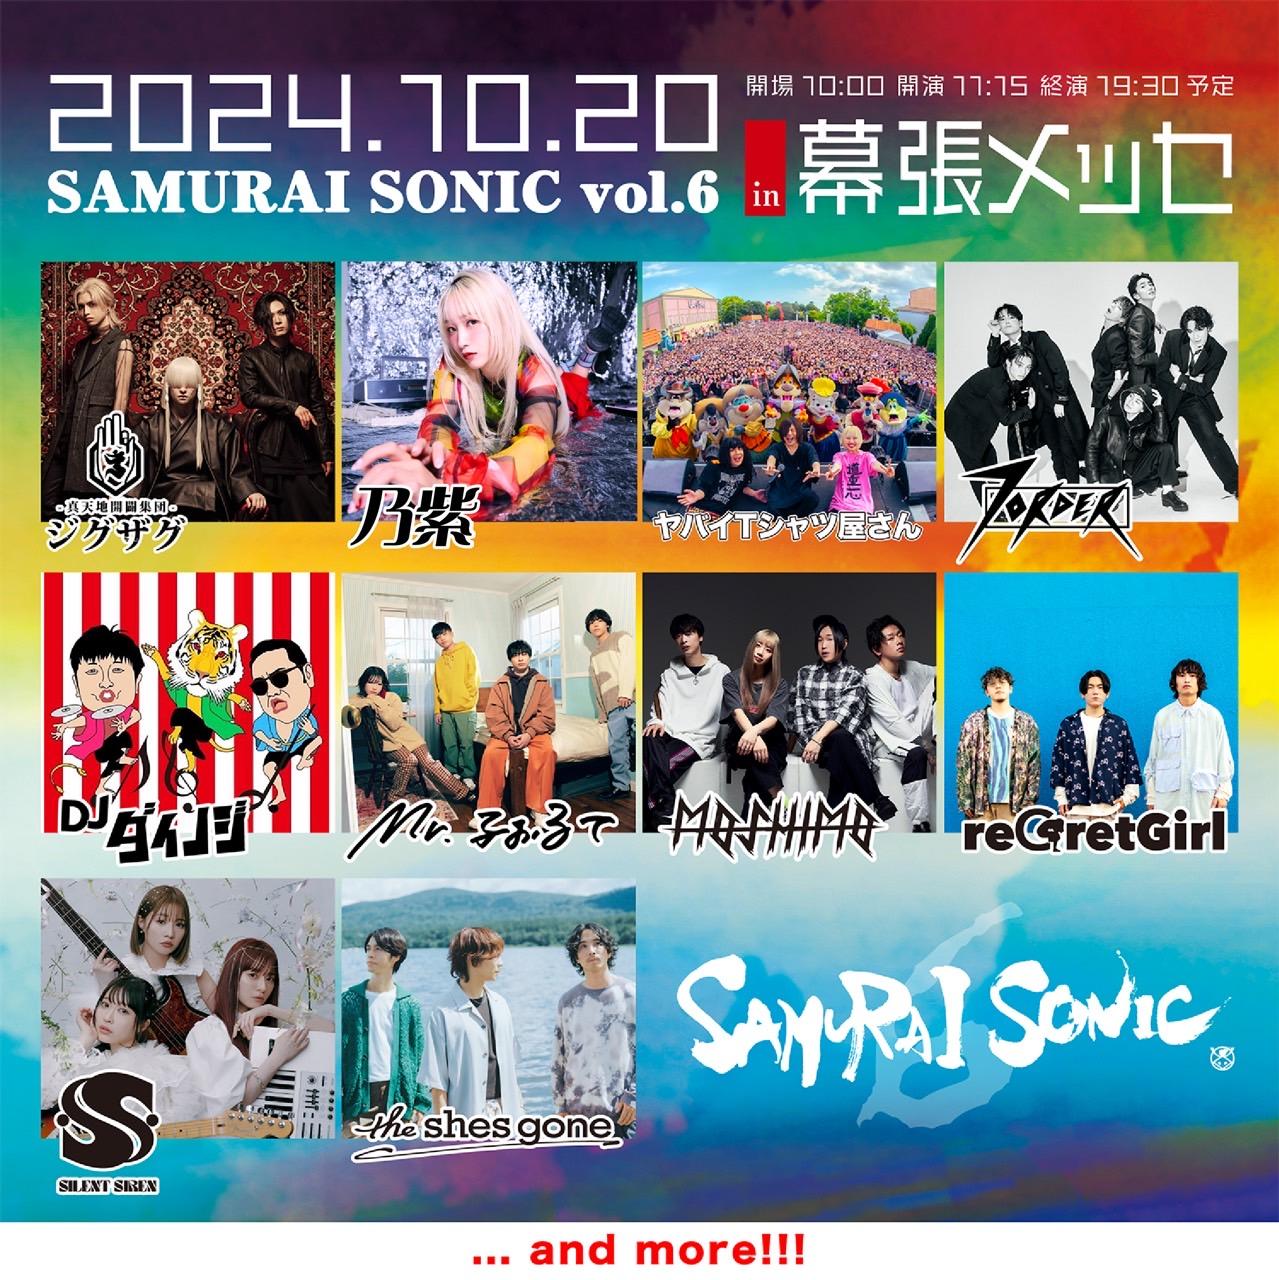 【SAMURAI SONIC vol.6】出演決定!! 